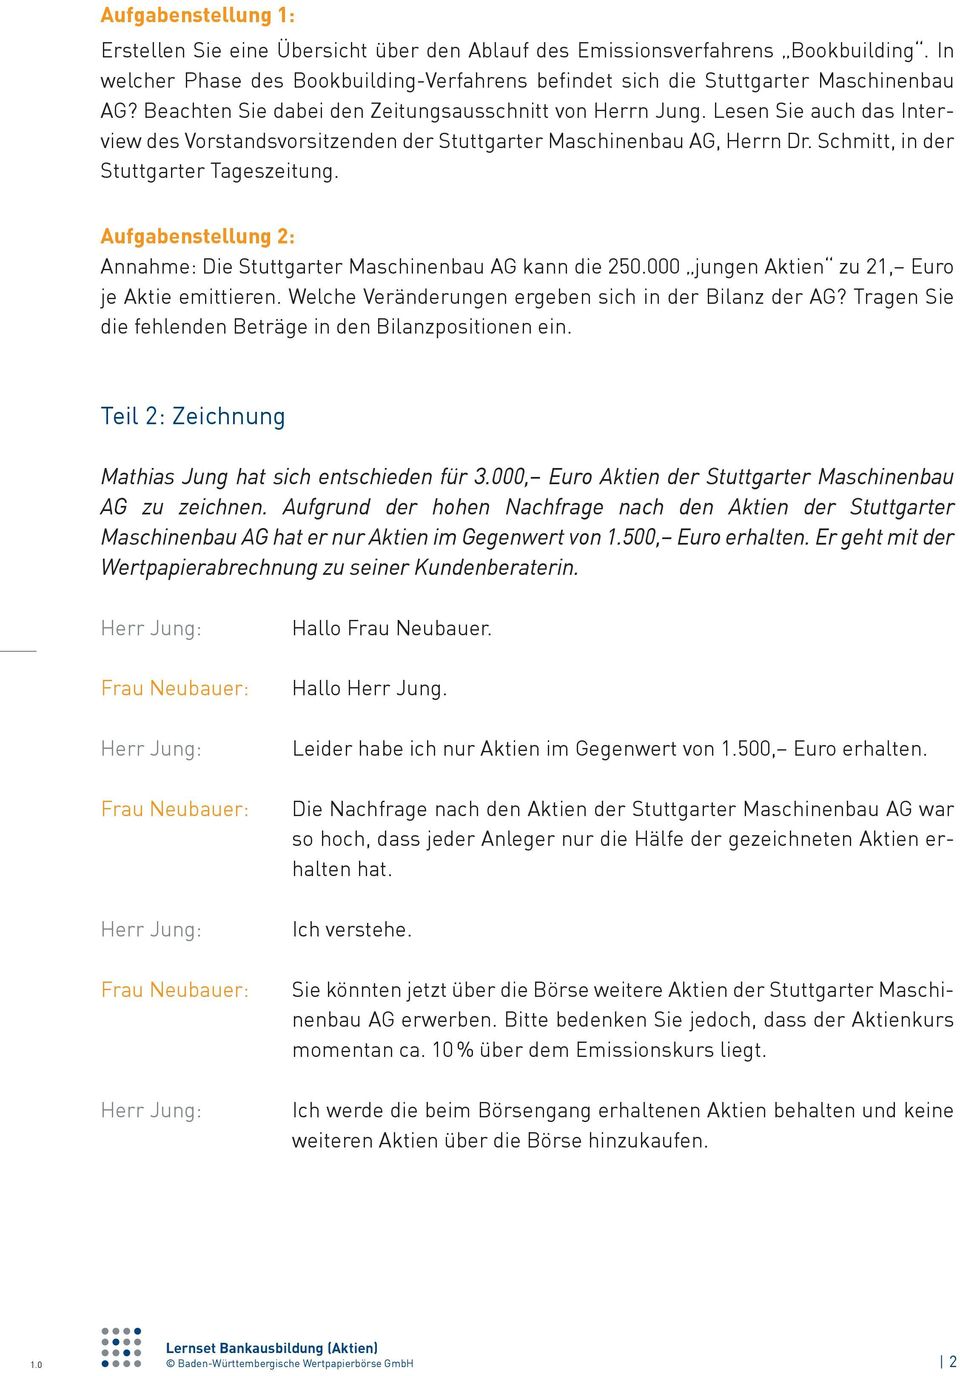 Aufgabenstellung 2: Annahme: Die Stuttgarter Maschinenbau AG kann die 250.000 jungen Aktien zu 21, Euro je Aktie emittieren. Welche Veränderungen ergeben sich in der Bilanz der AG?